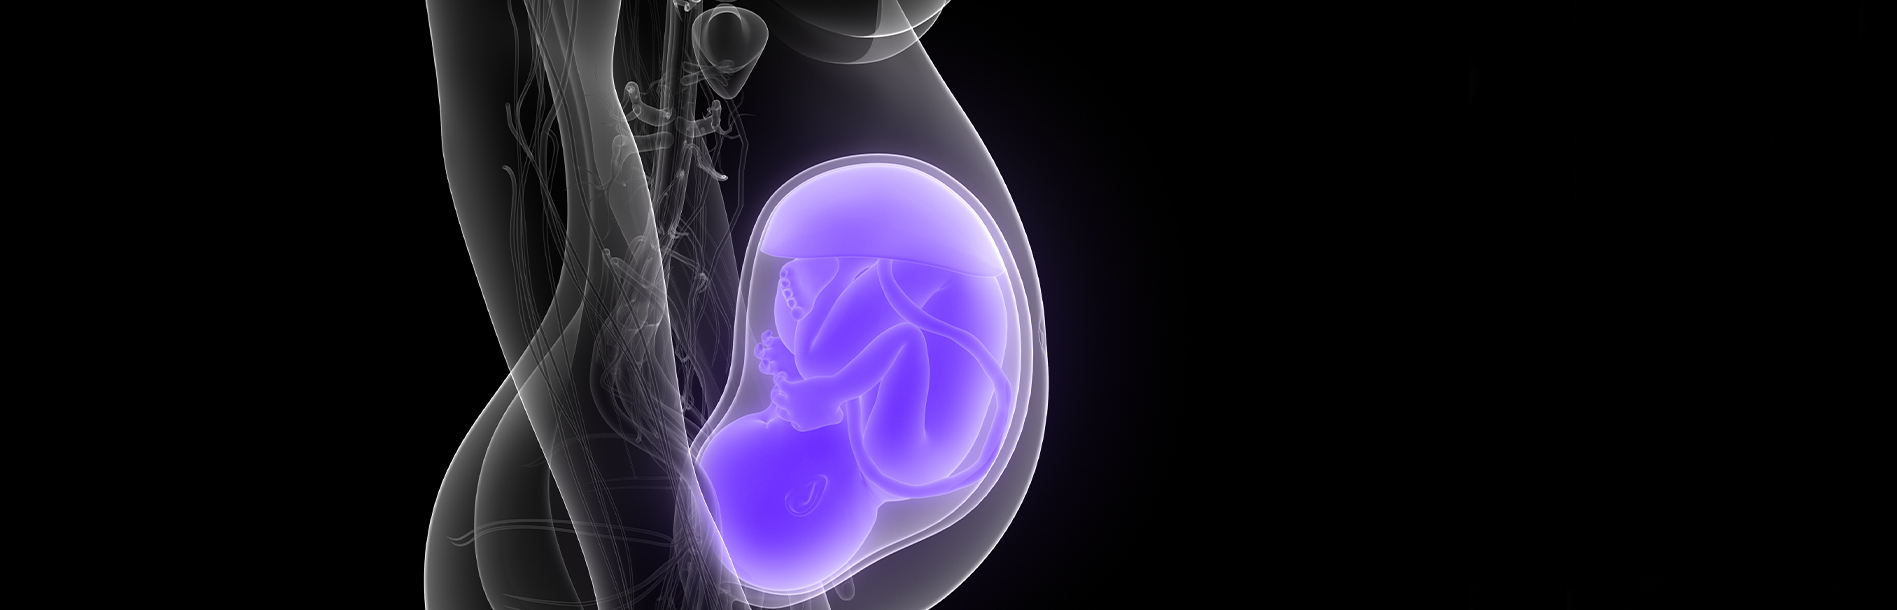 Etapas do desenvolvimento fetal: Quais são? Descubra.